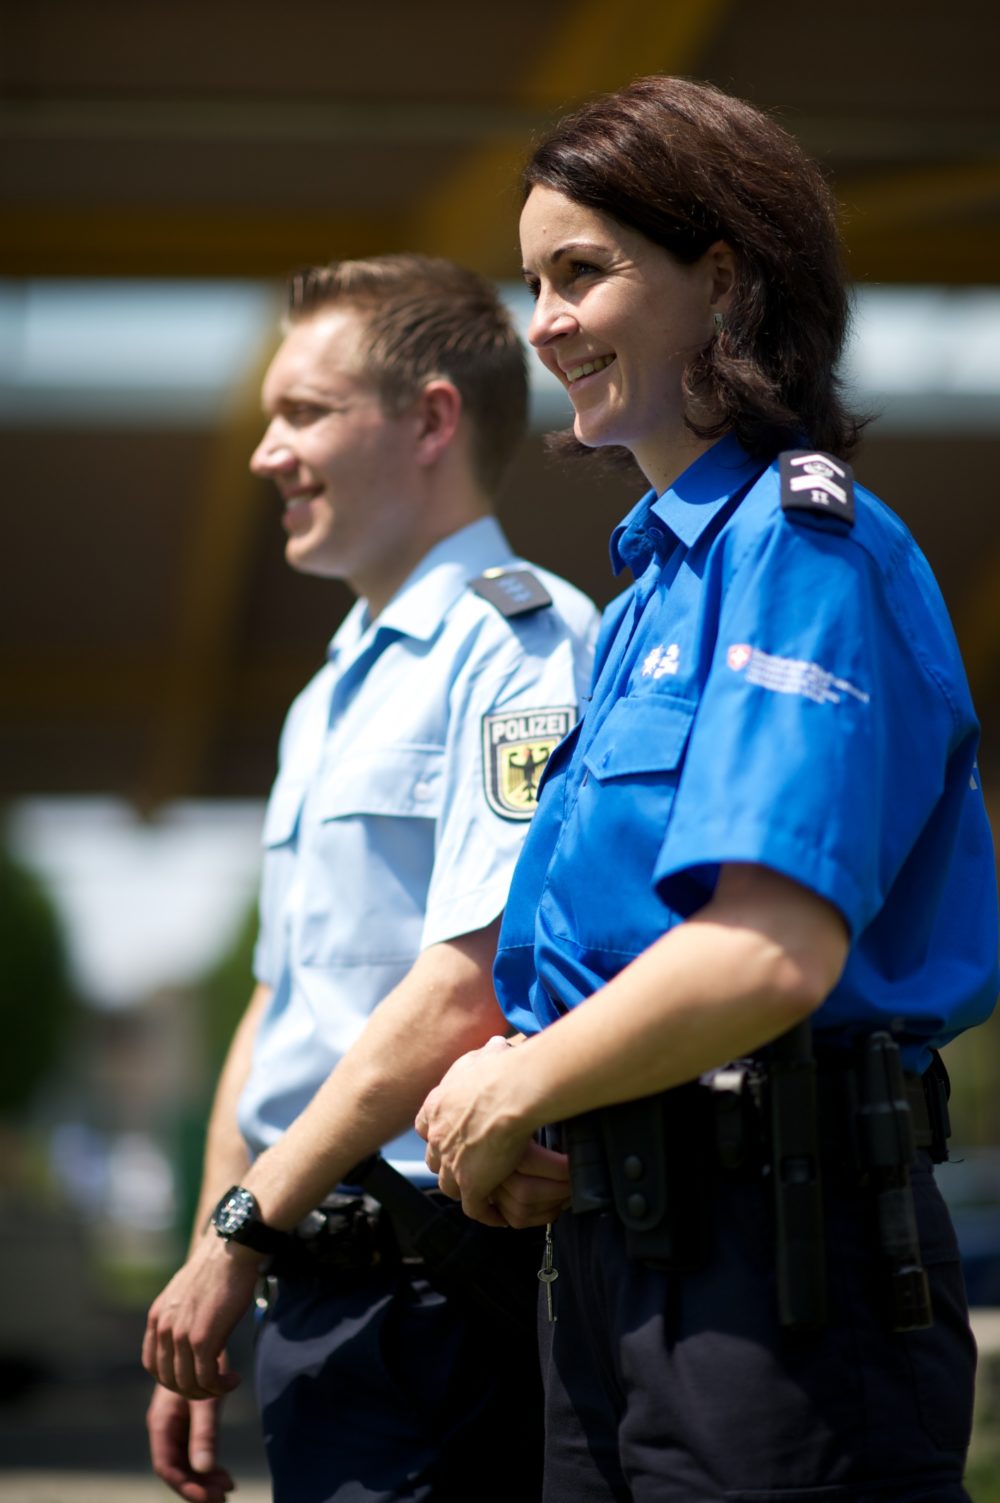 Ein deutscher Bundespolizist und eine schweizerische Grenzwächterin bei einer gemeinsamen Kontrolle. (Symbolbild: © Bundespolizeiinspektion Konstanz)